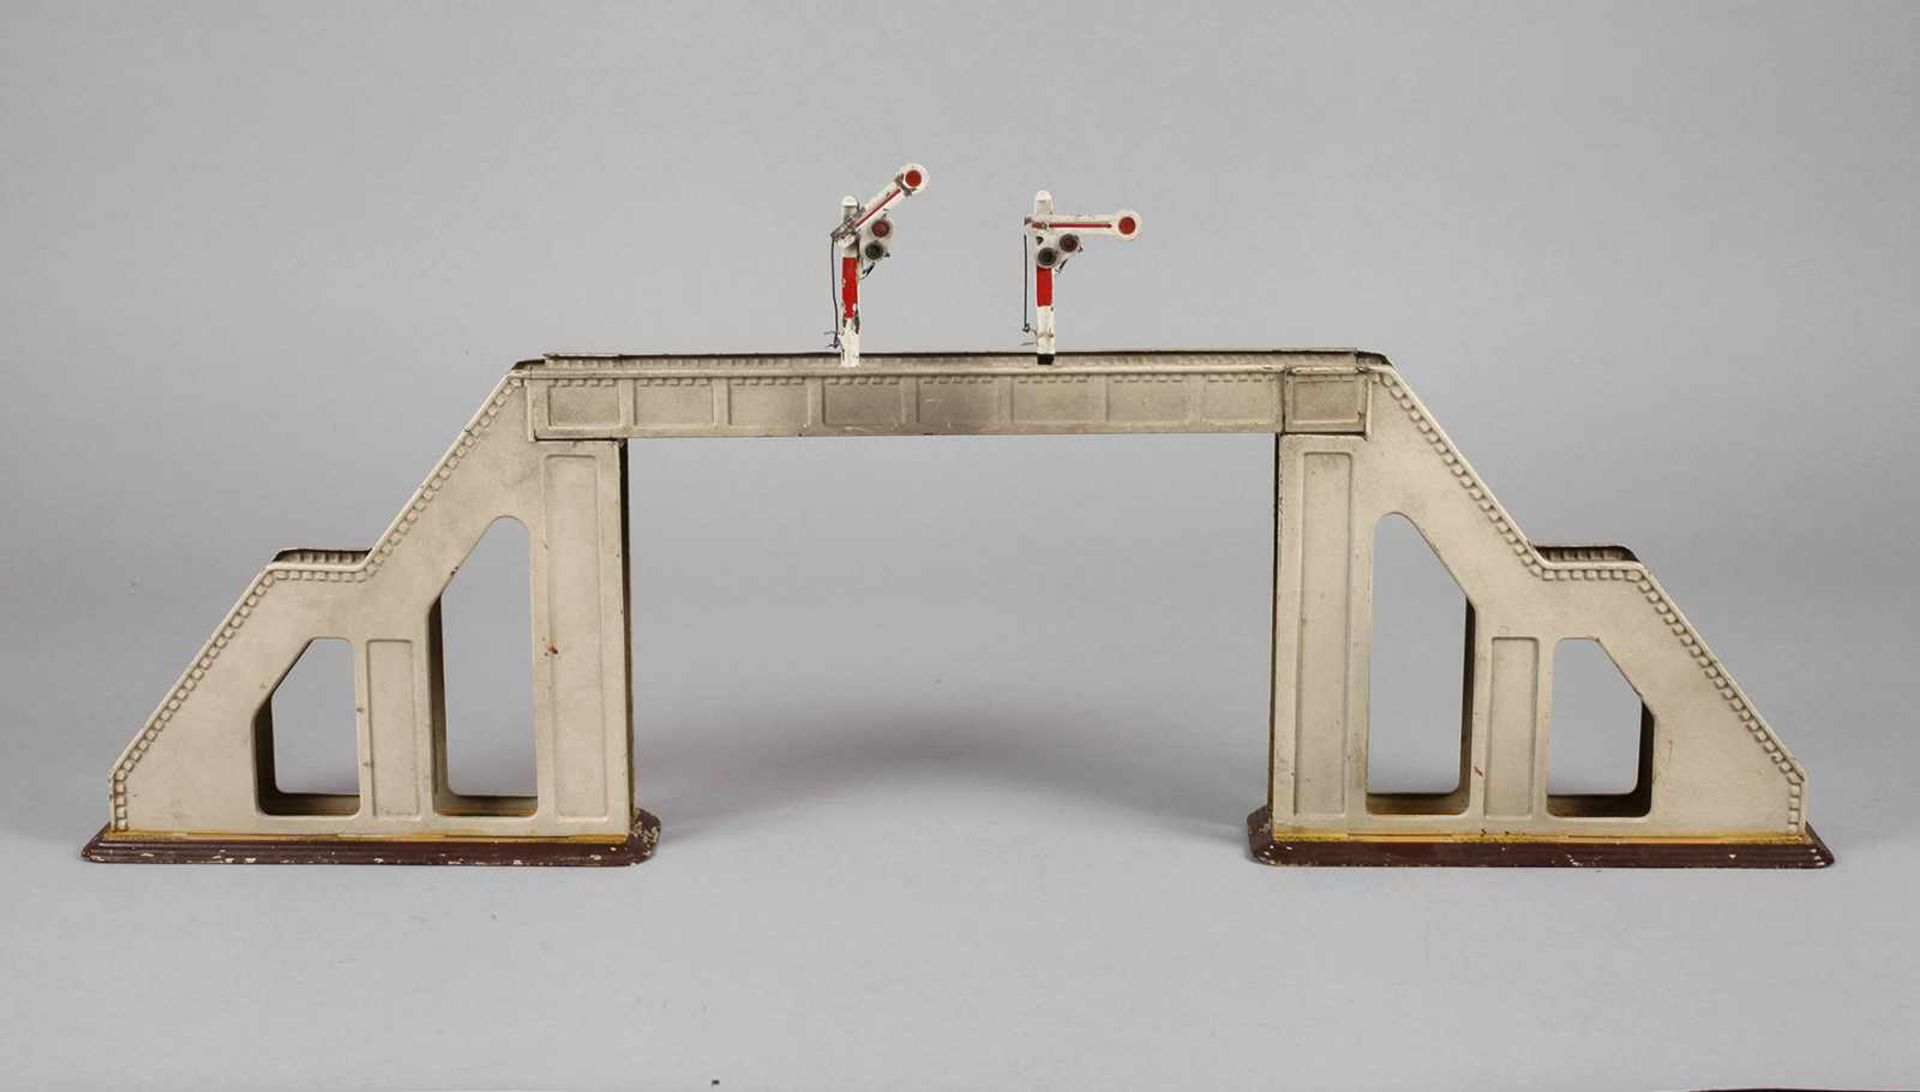 Signalbrücke Märklin1930er Jahre, dreiteilig zerlegbar, mit aufgesetzten Signalen, bespielt, L 78